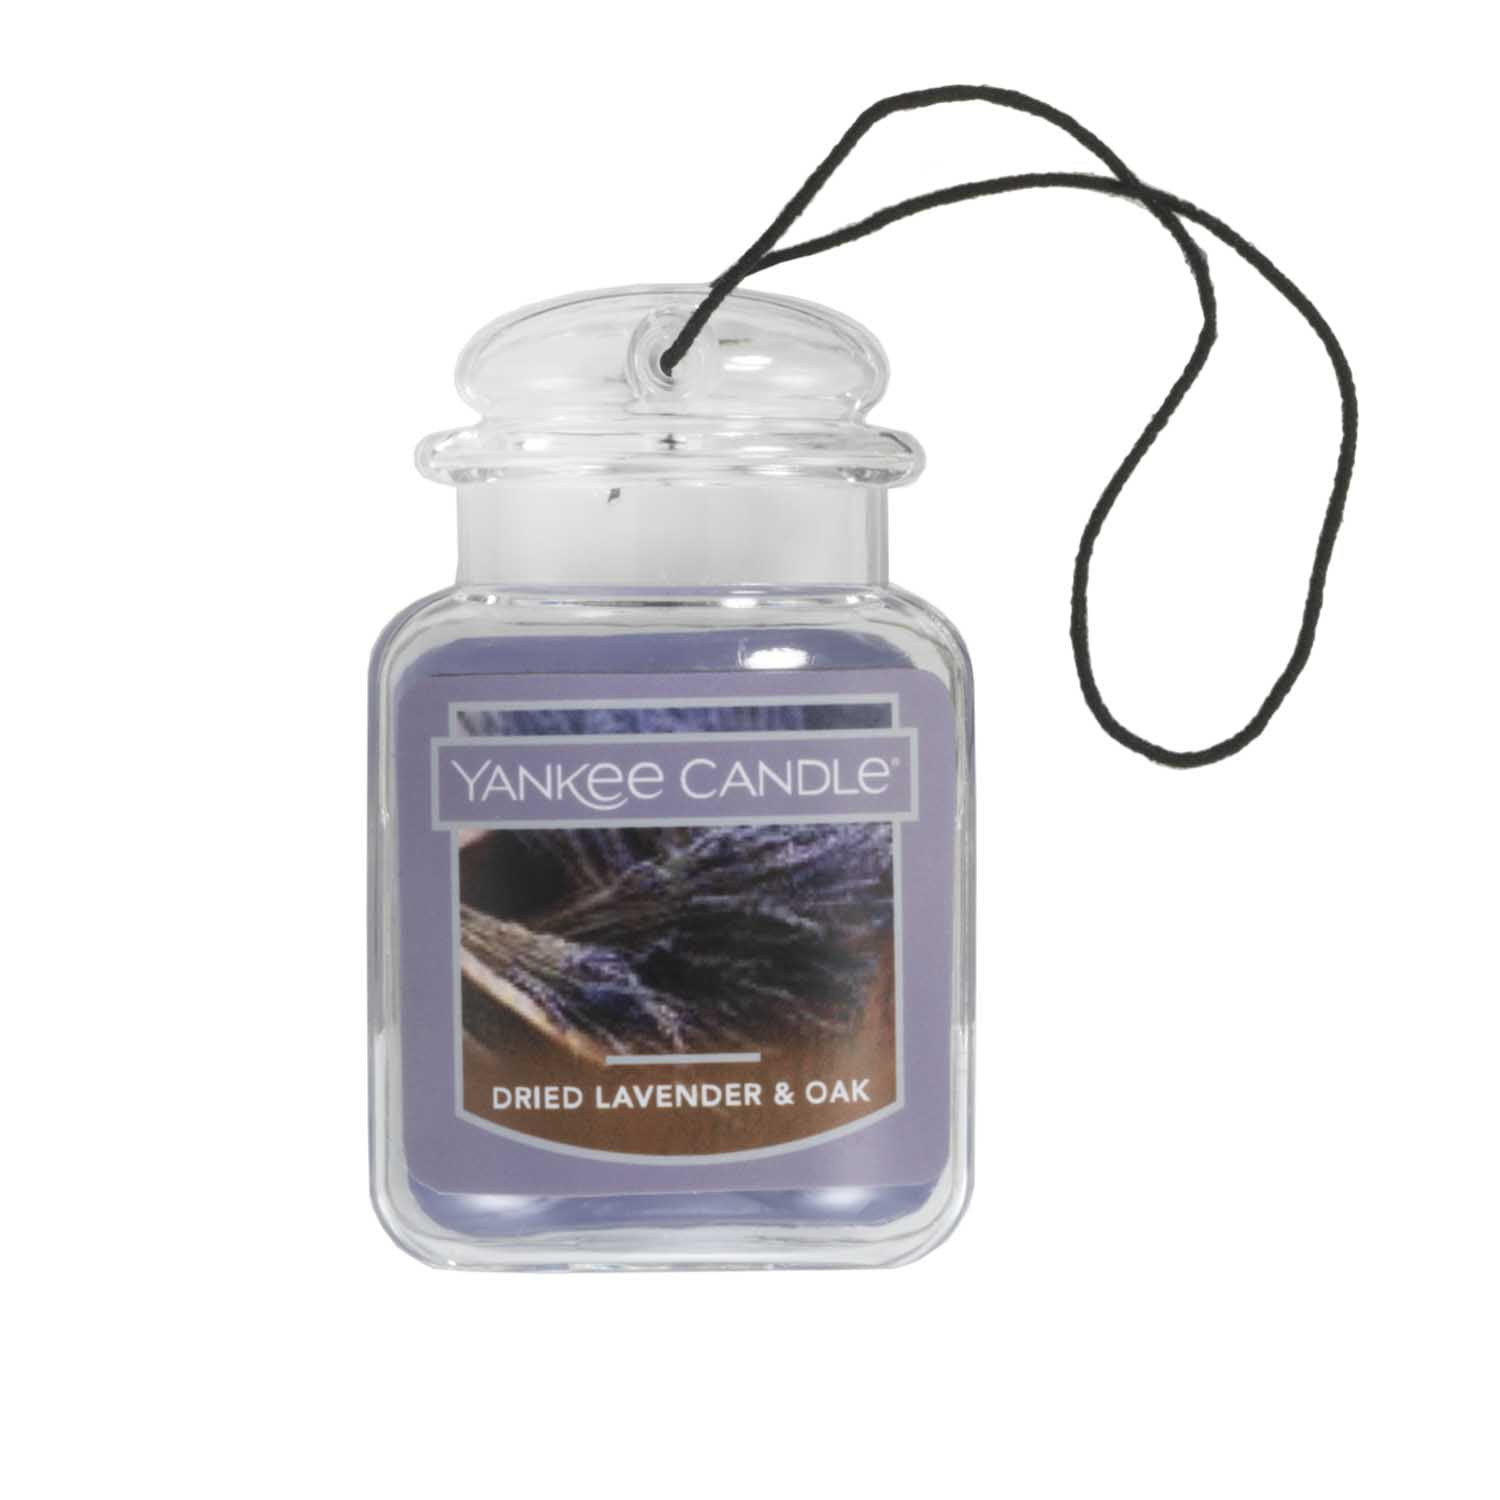 Yankee Candle Car Jar Ultimate Hanging Air Freshener - Balsam & Cedar 